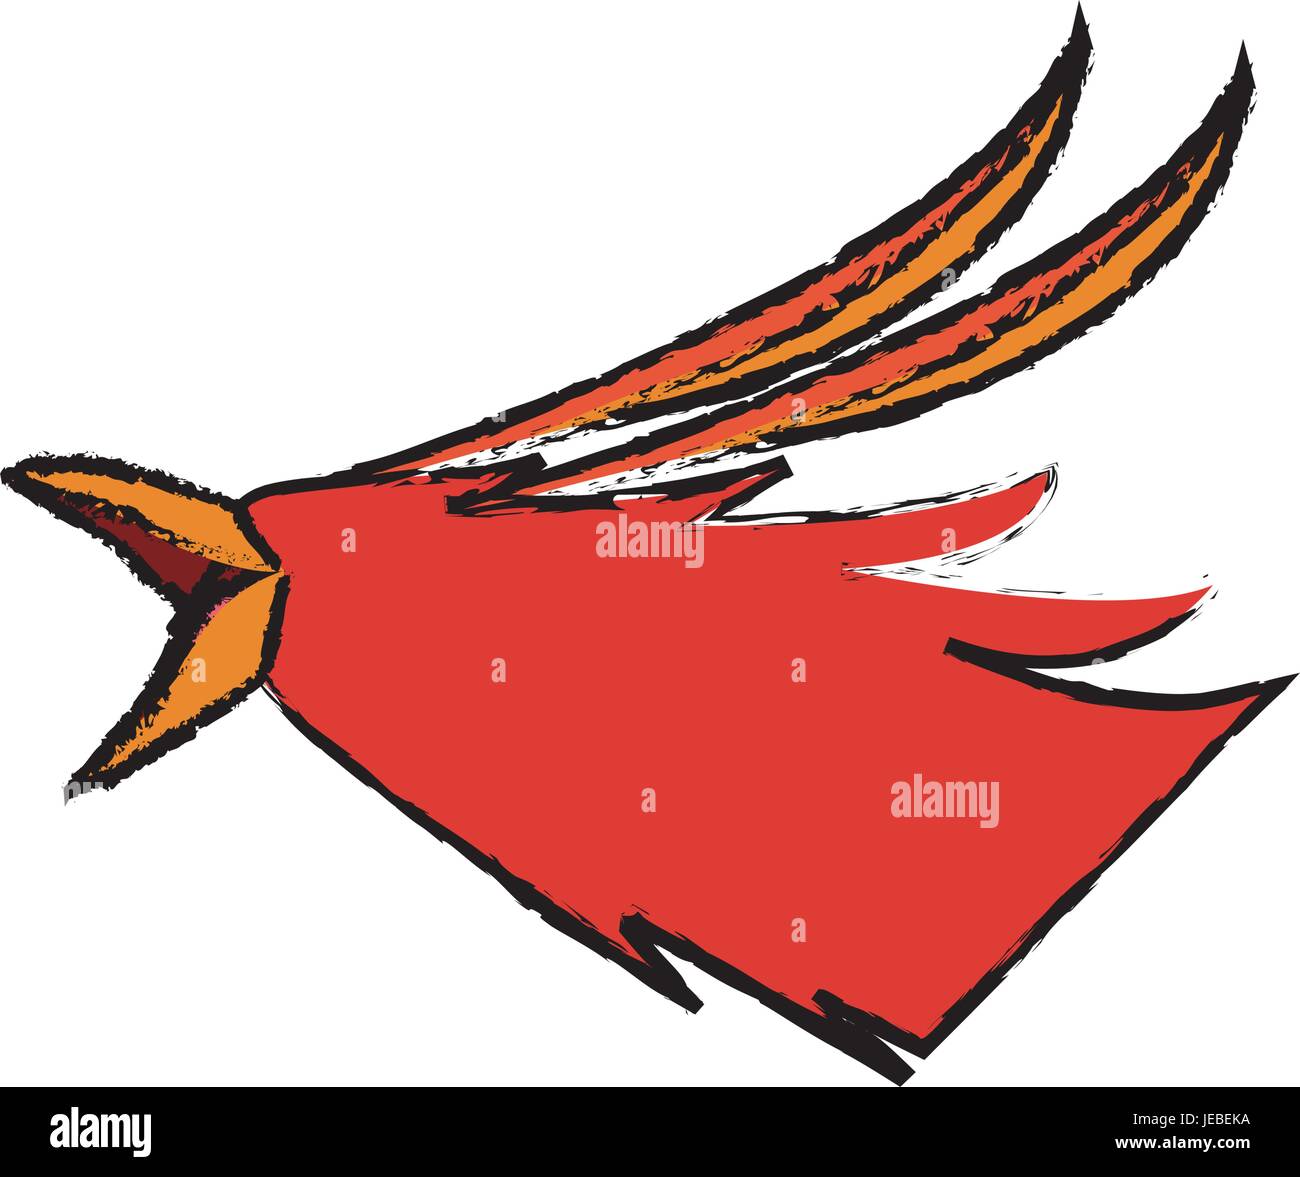 La tête de phoenix créature de légende de l'image de la bête Illustration de Vecteur